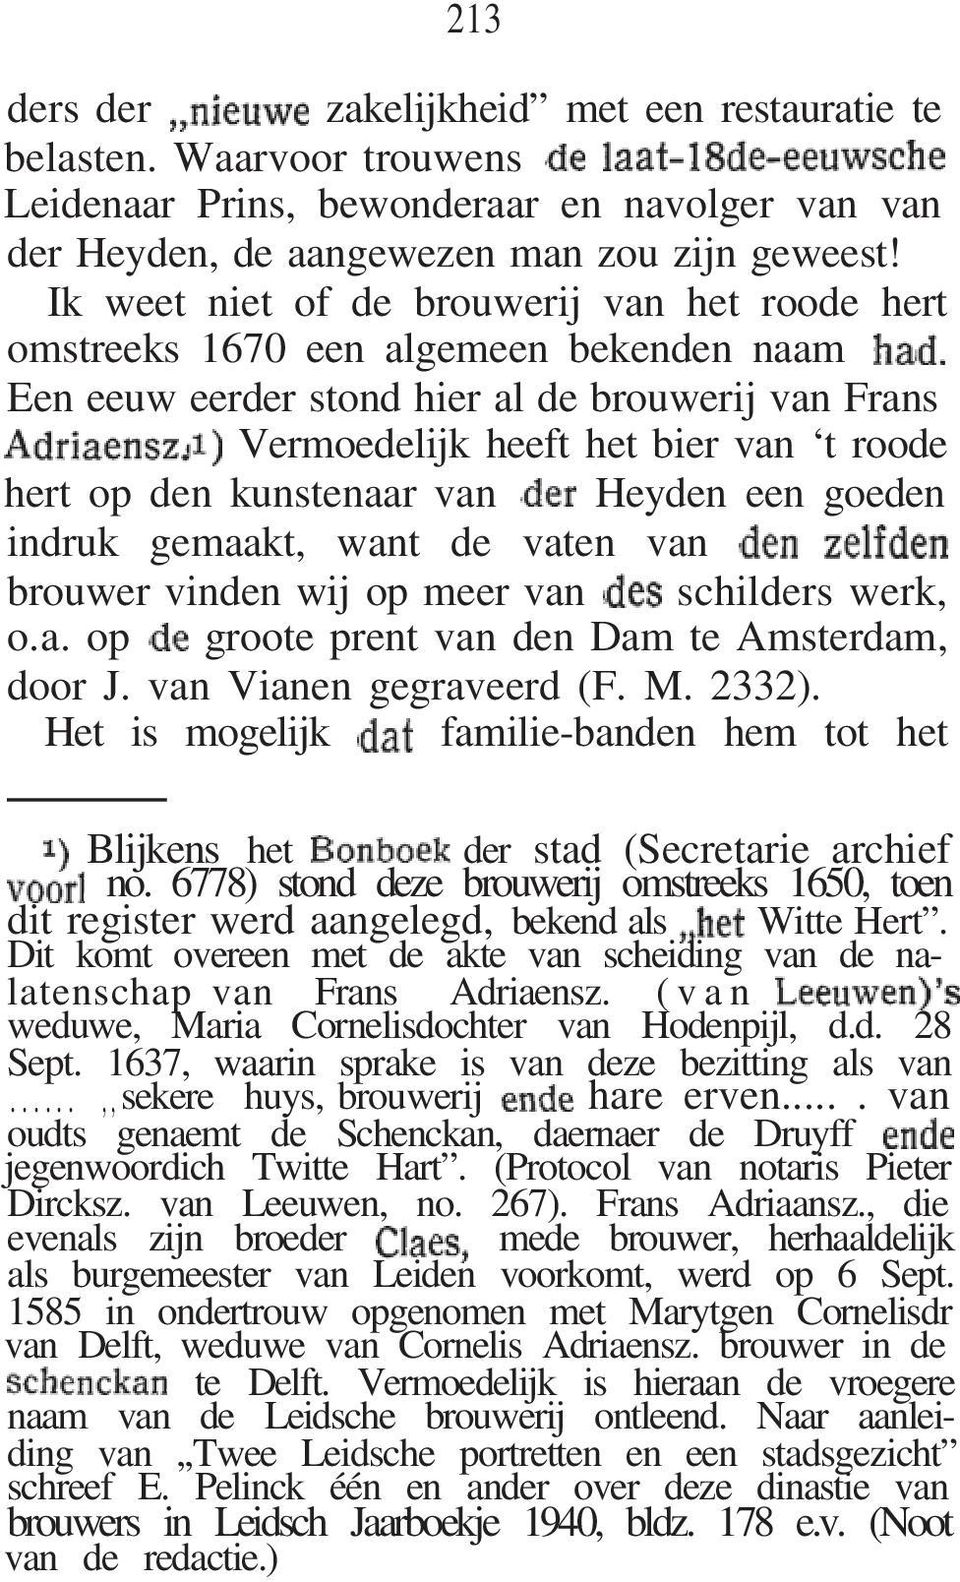 kunstenaar van Heyden een goeden indruk gemaakt, want de vaten van brouwer vinden wij op meer van schilders werk, o.a. op groote prent van den Dam te Amsterdam, door J. van Vianen gegraveerd (F. M.